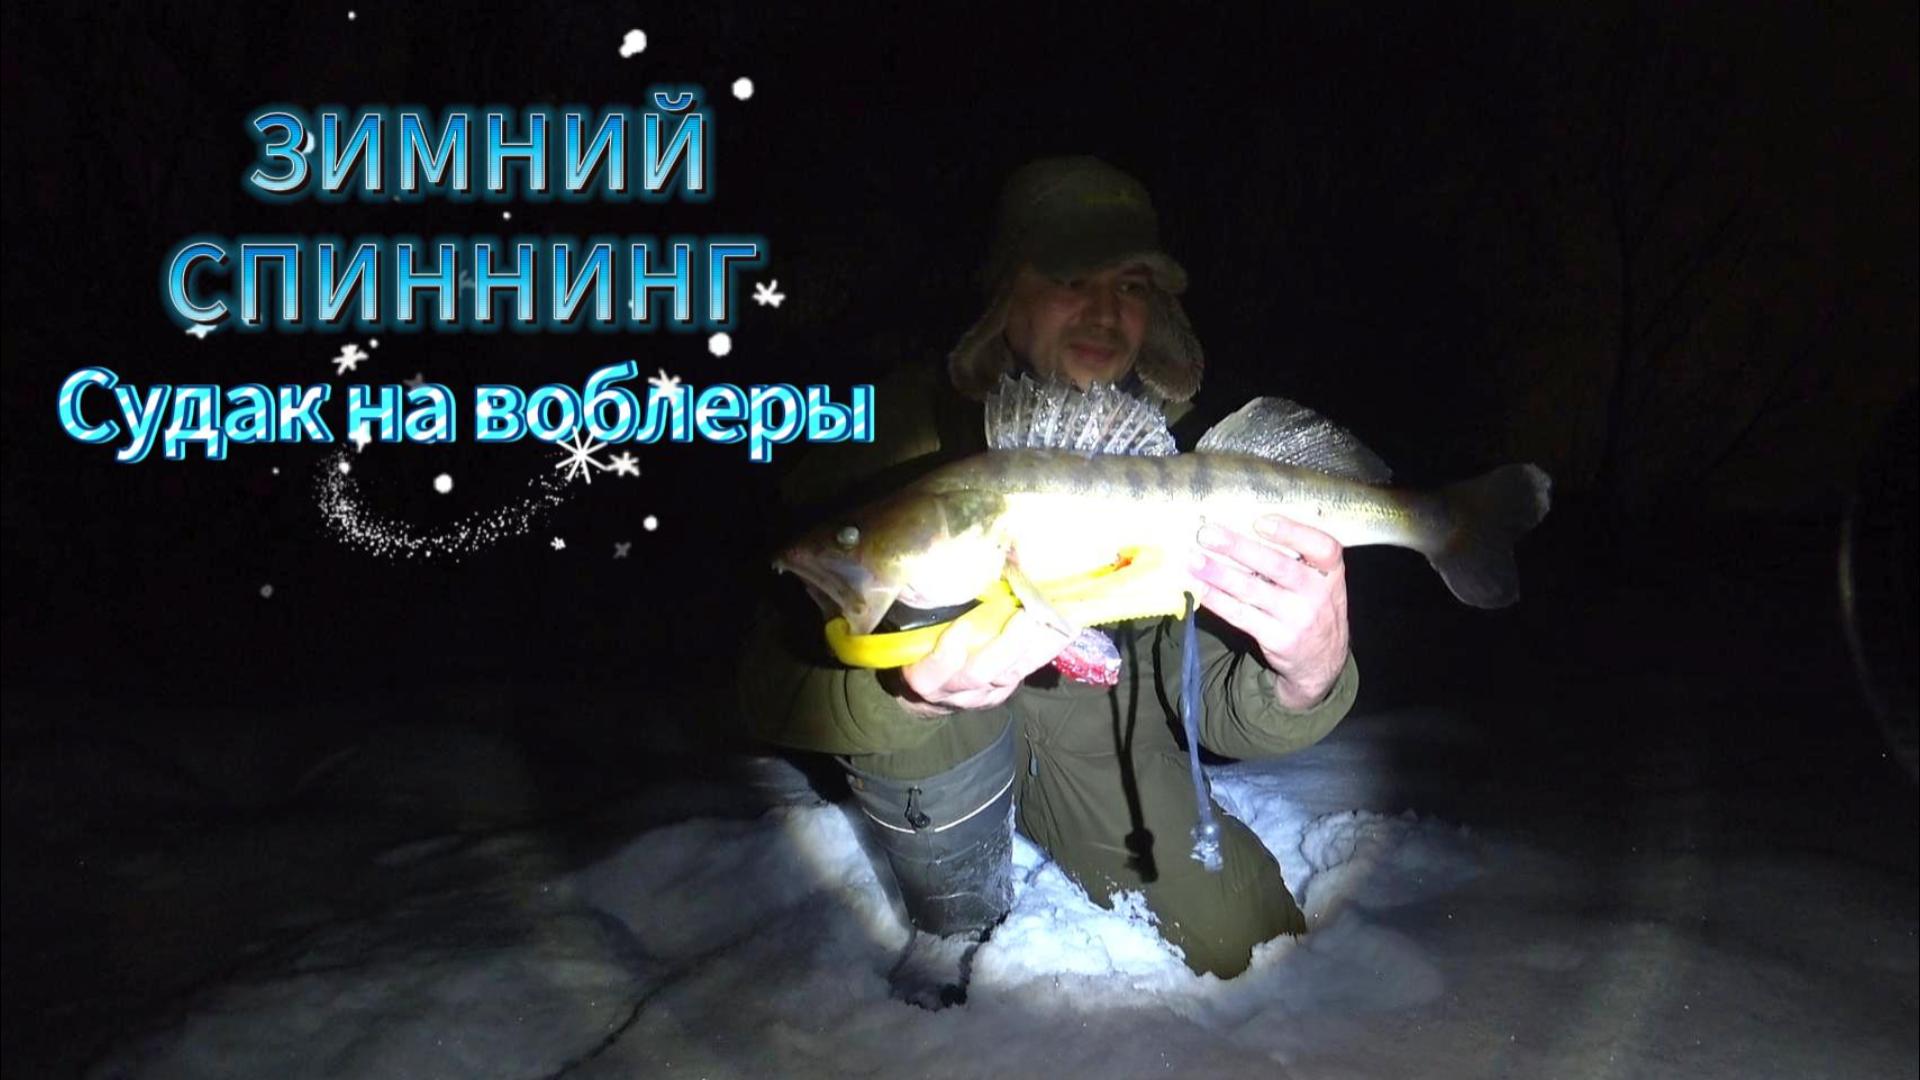 Спиннинг на Москва-реке Судак на воблеры. Рыбалка ночью.